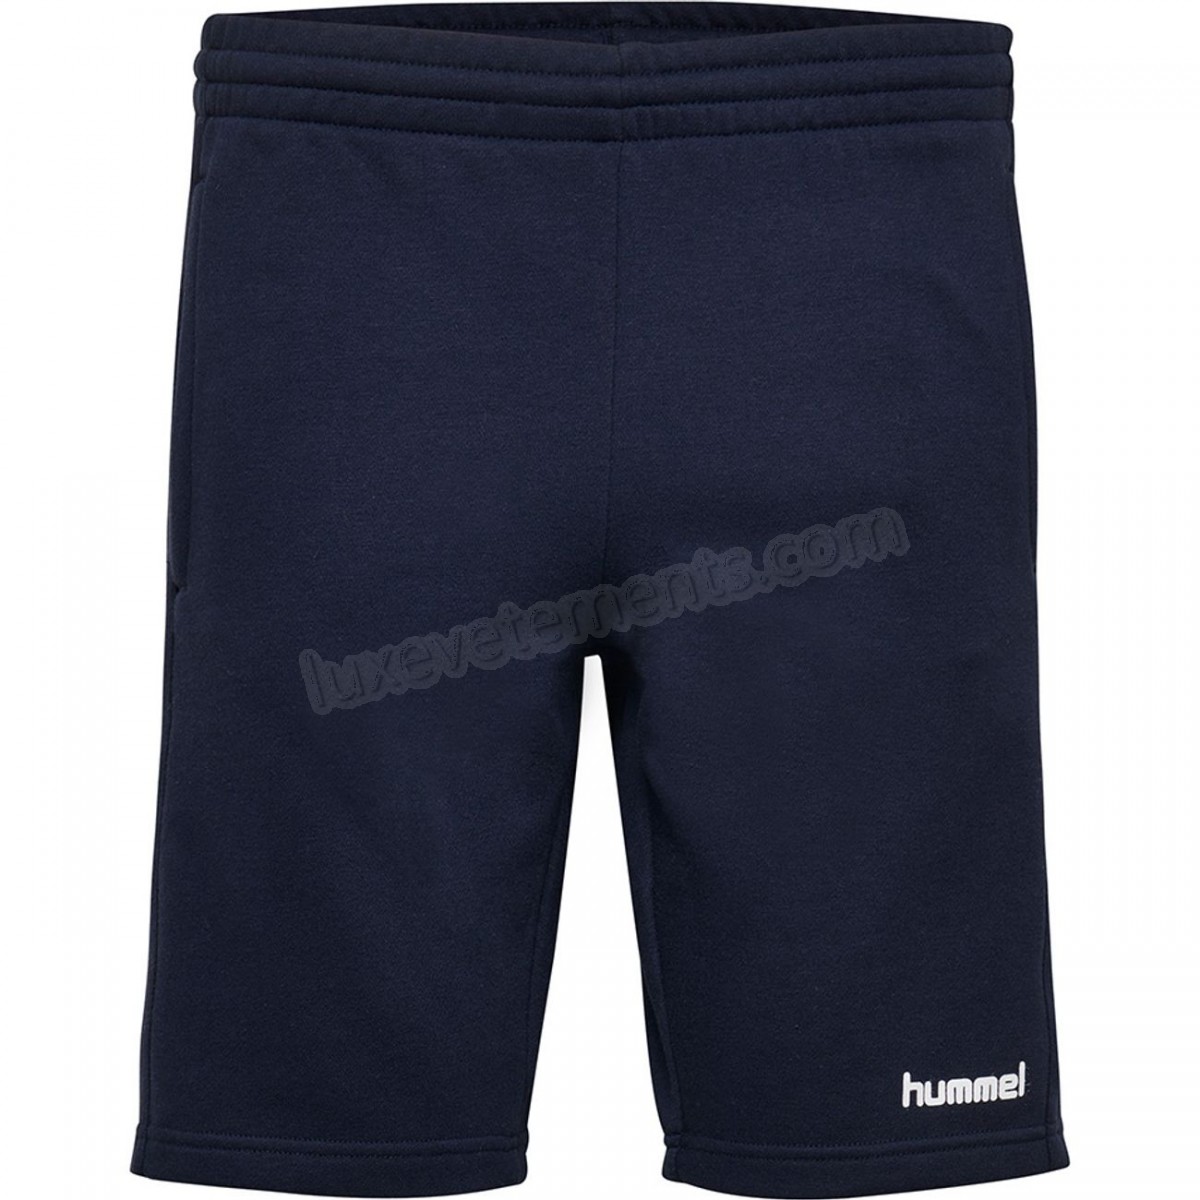 Hummel-Fitness femme HUMMEL Short femme Hummel hmlgo cotton Vente en ligne - -9